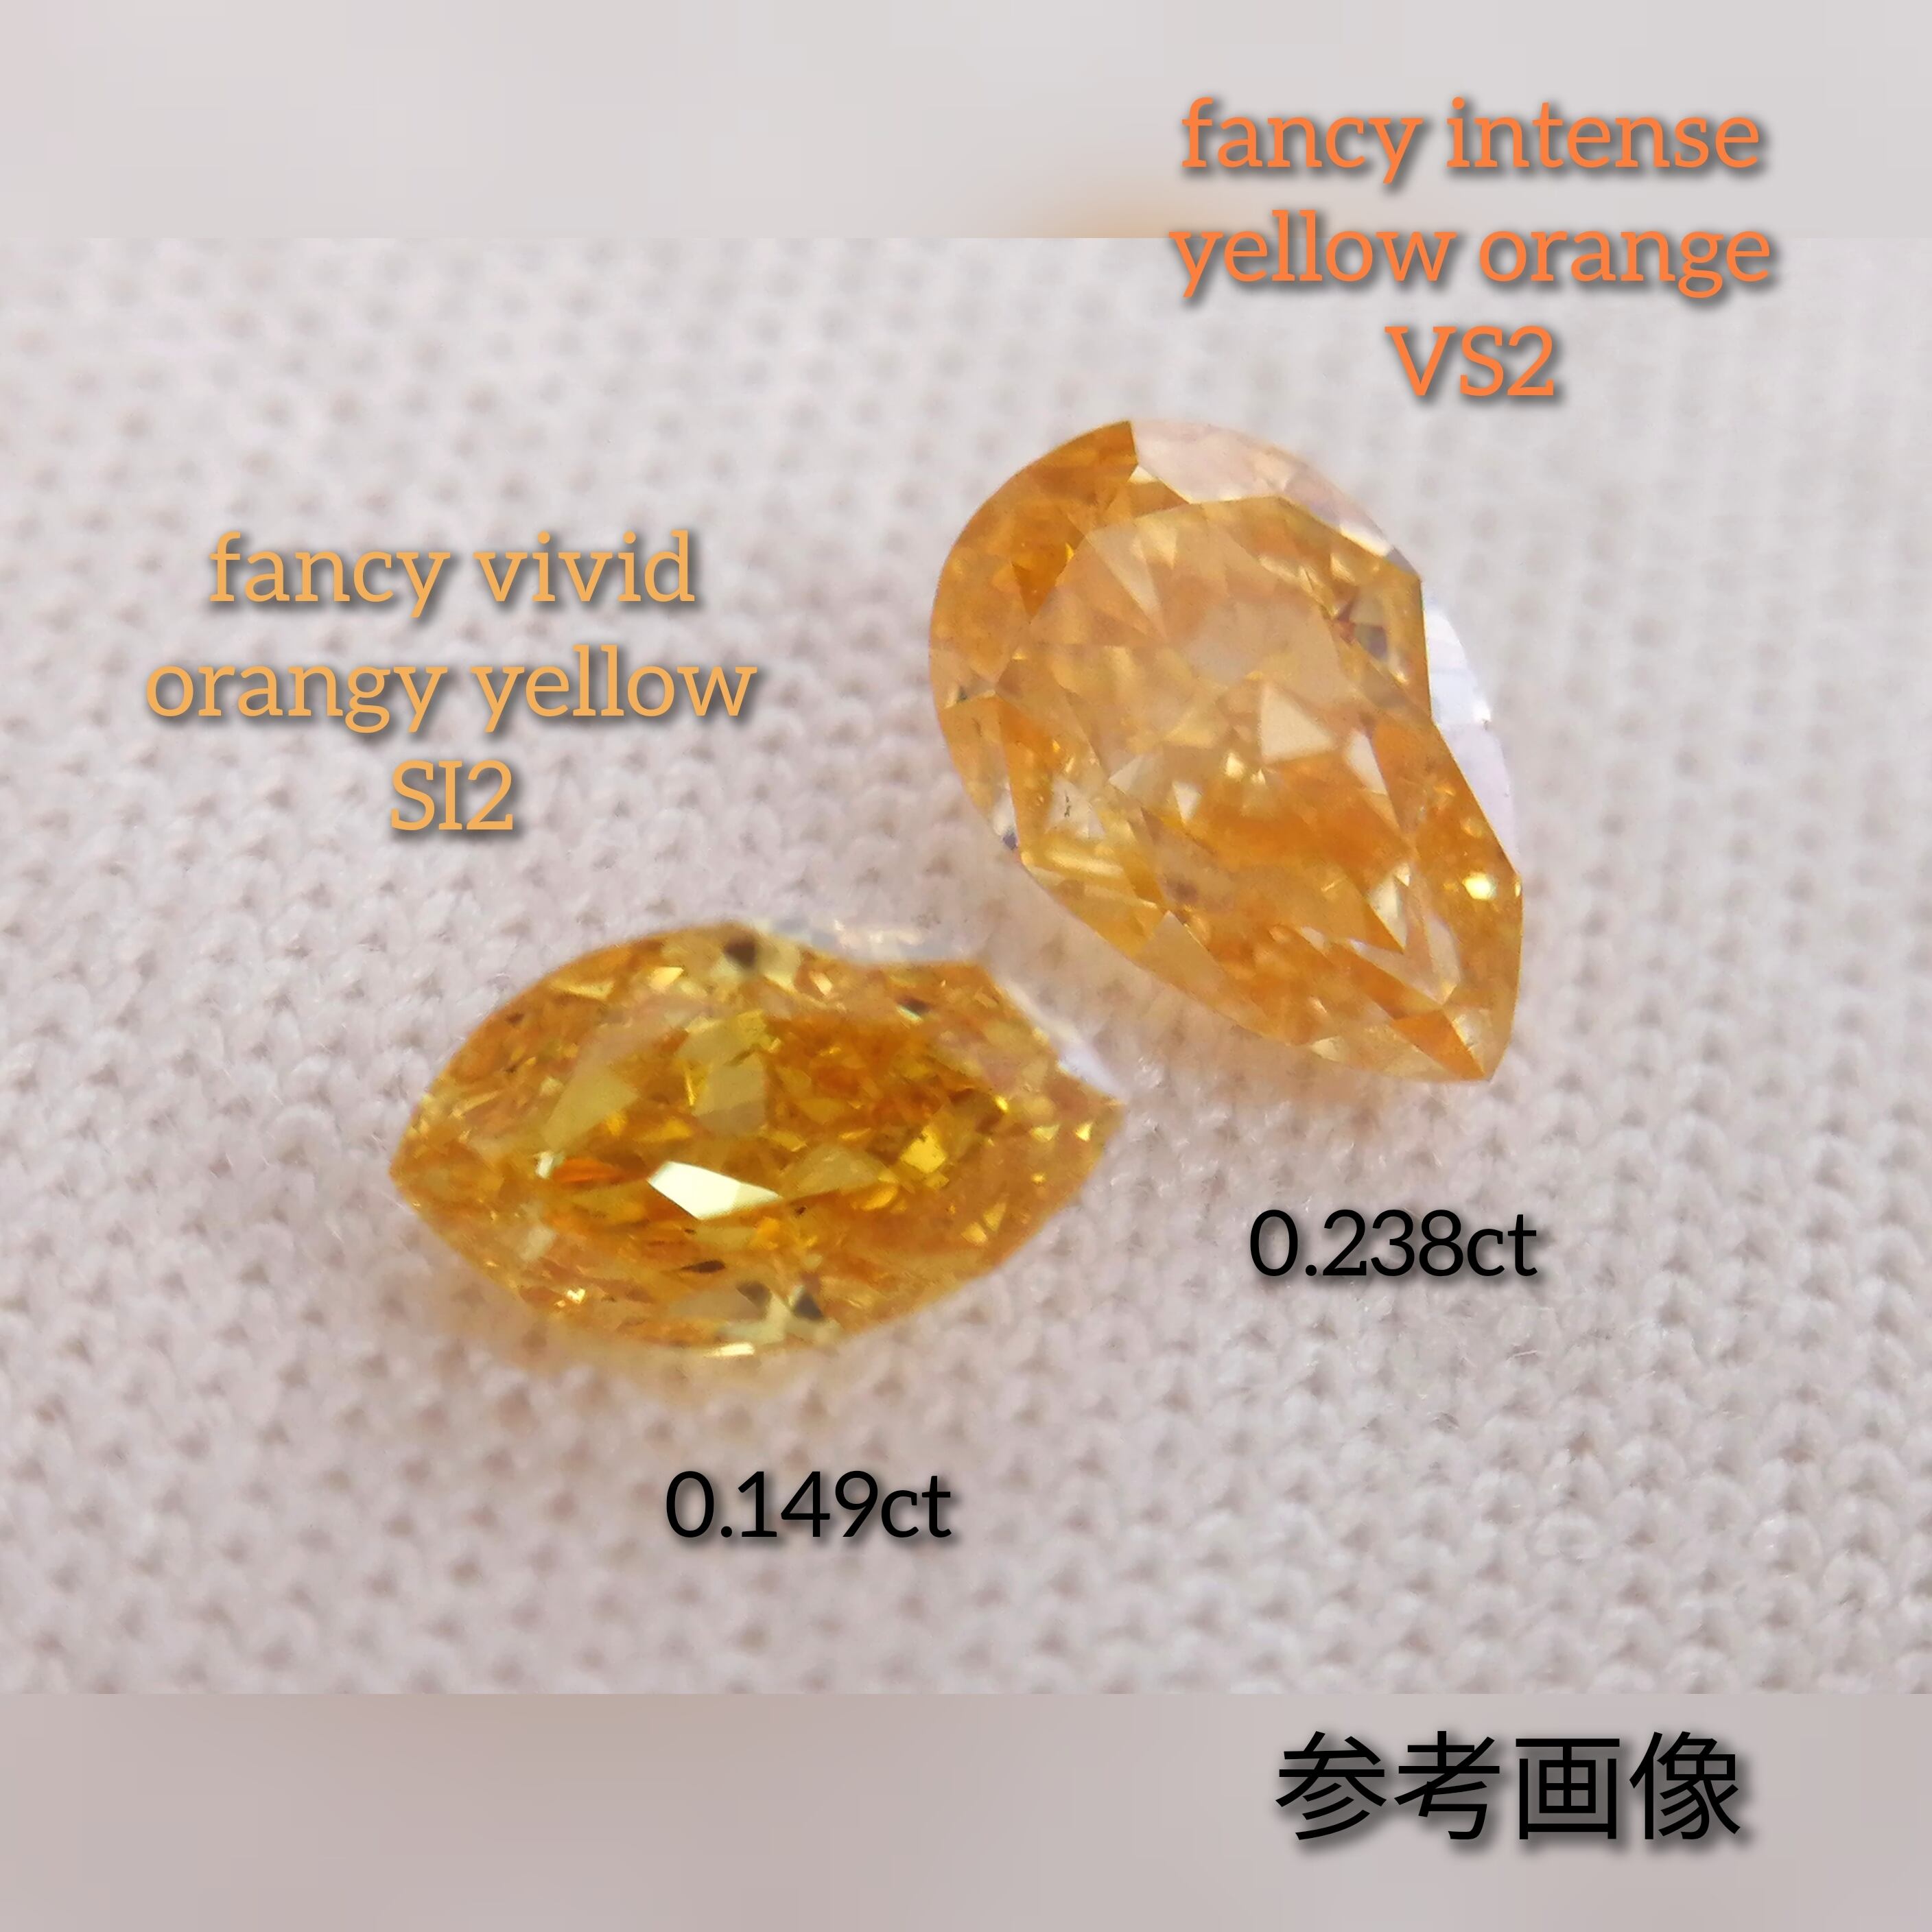 オレンジダイヤモンドルース 0.238ct fancy intense yellow orange VS2